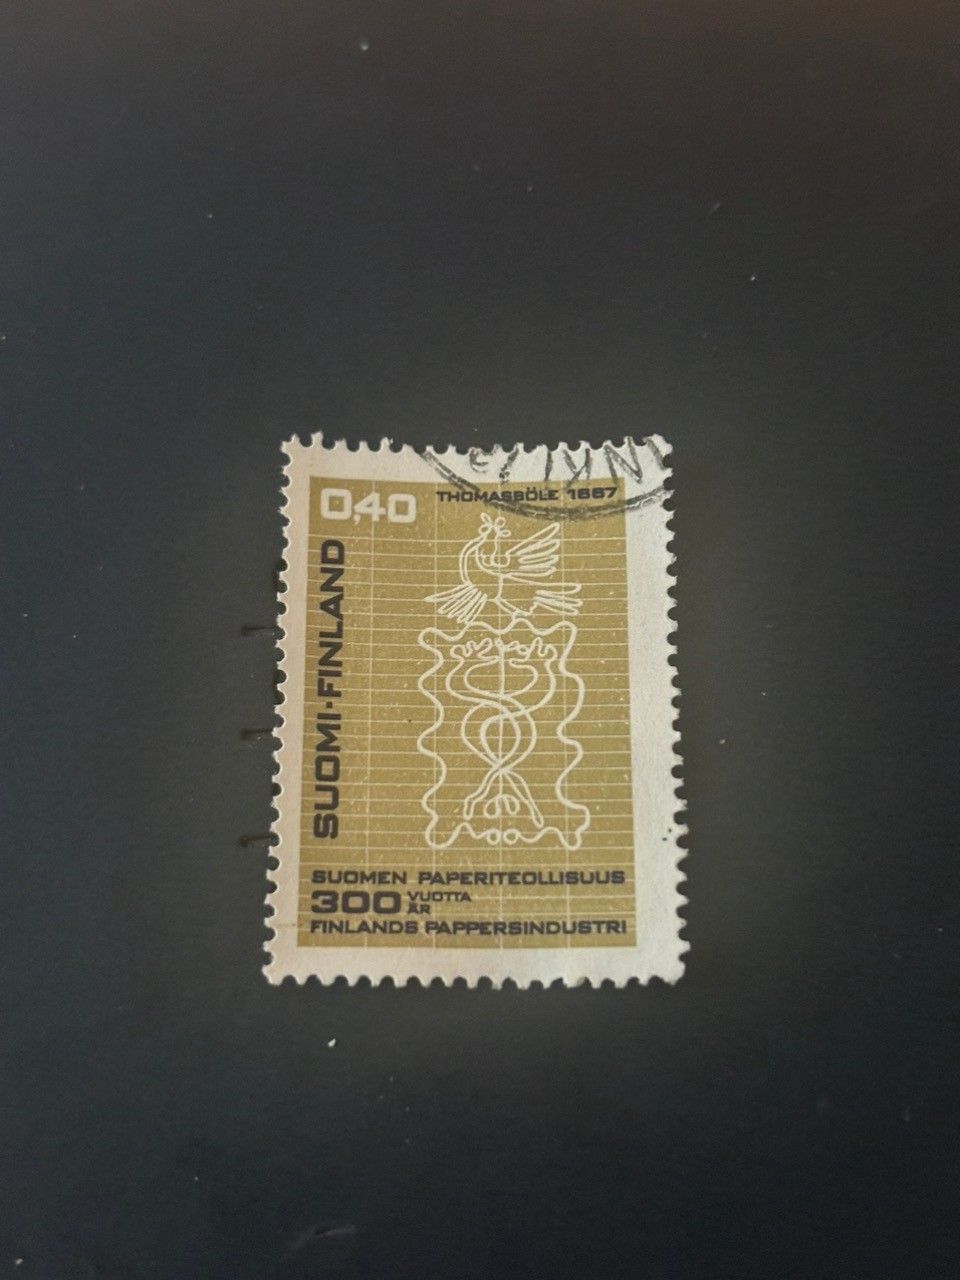 Suomi postimerkkejä. Erinomainen kunto